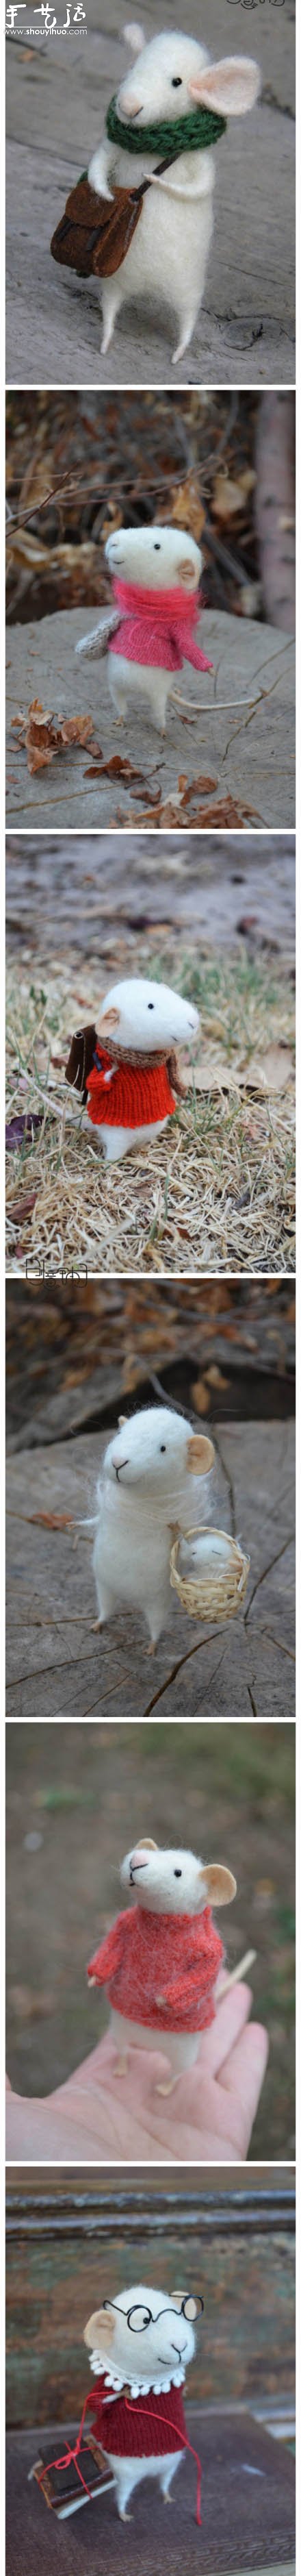 羊毛毡制作的可爱精灵鼠小弟